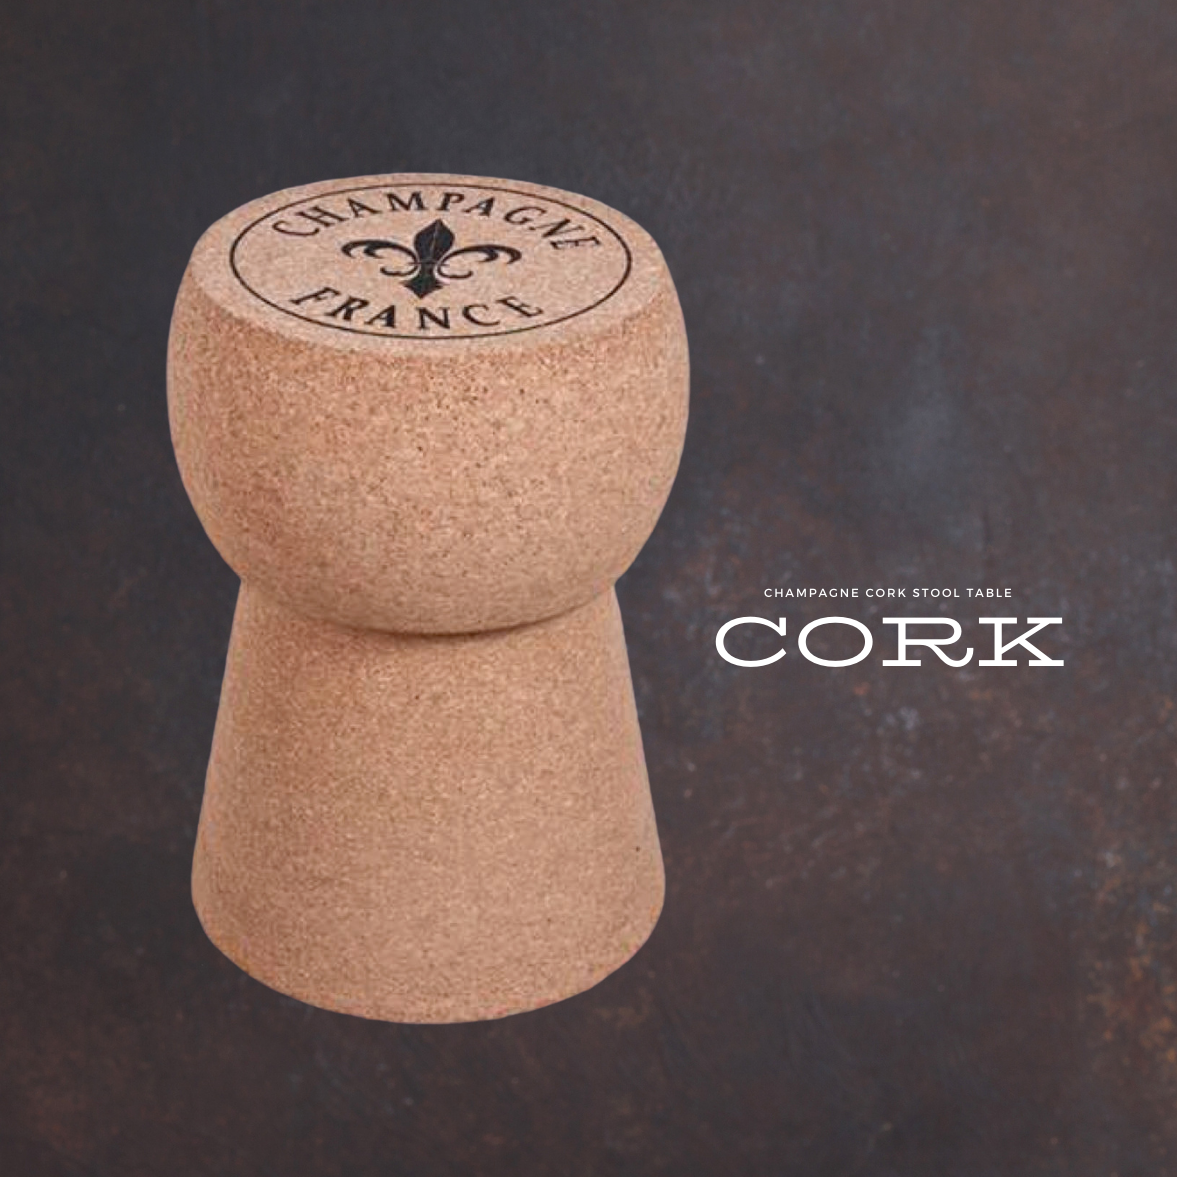 Kingsbottle Champagne Cork Stool Cork Table KBX001F-wine & bar sets-The Wine Cooler Club